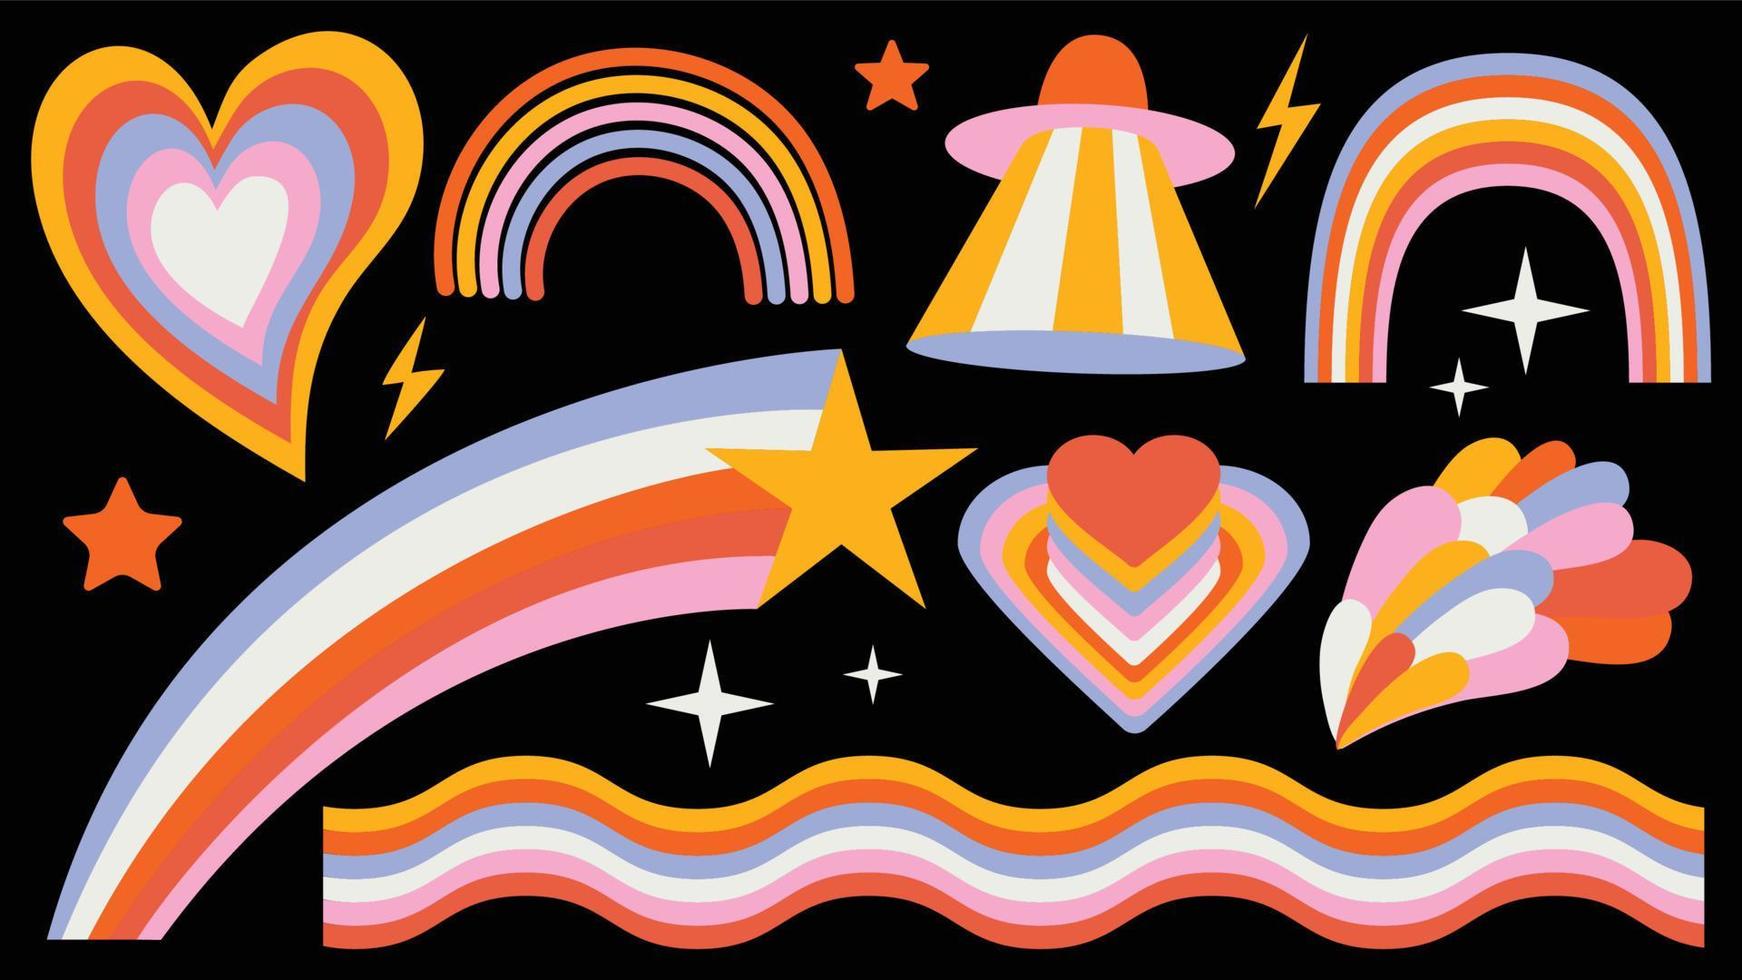 satz von hipster retro coolen regenbogen-psychedelischen elementen. eine Sammlung grooviger, schillernder Cliparts aus den 70er Jahren. abstraktes Design von Cartoon-Aufklebern. Trend-Vektor-Illustration vektor